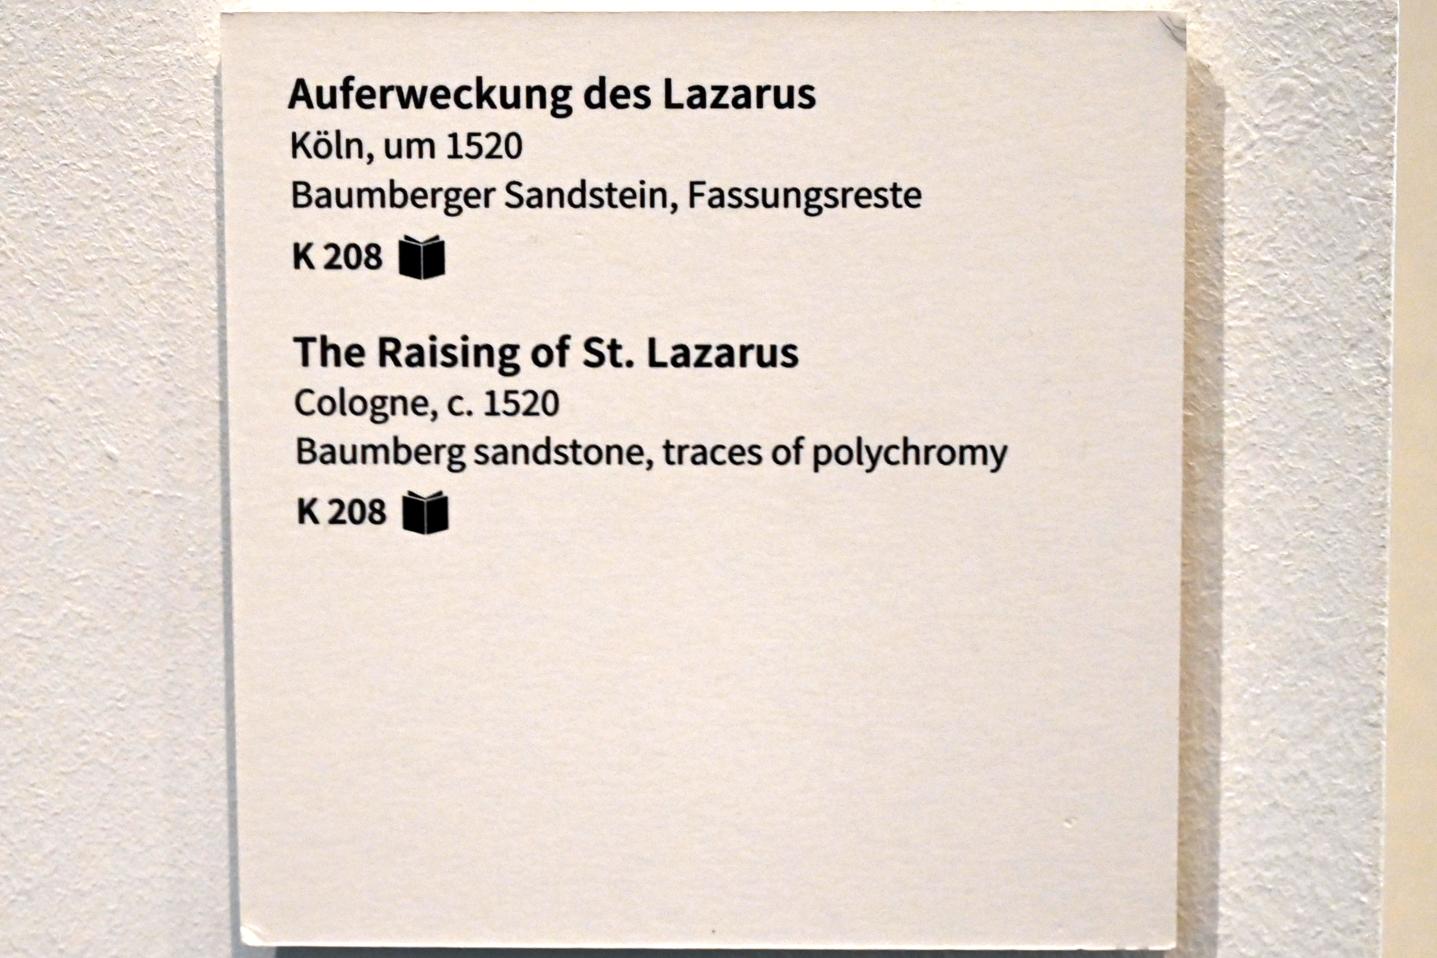 Auferweckung des Lazarus, Köln, Museum Schnütgen, Saal 2, um 1520, Bild 4/4